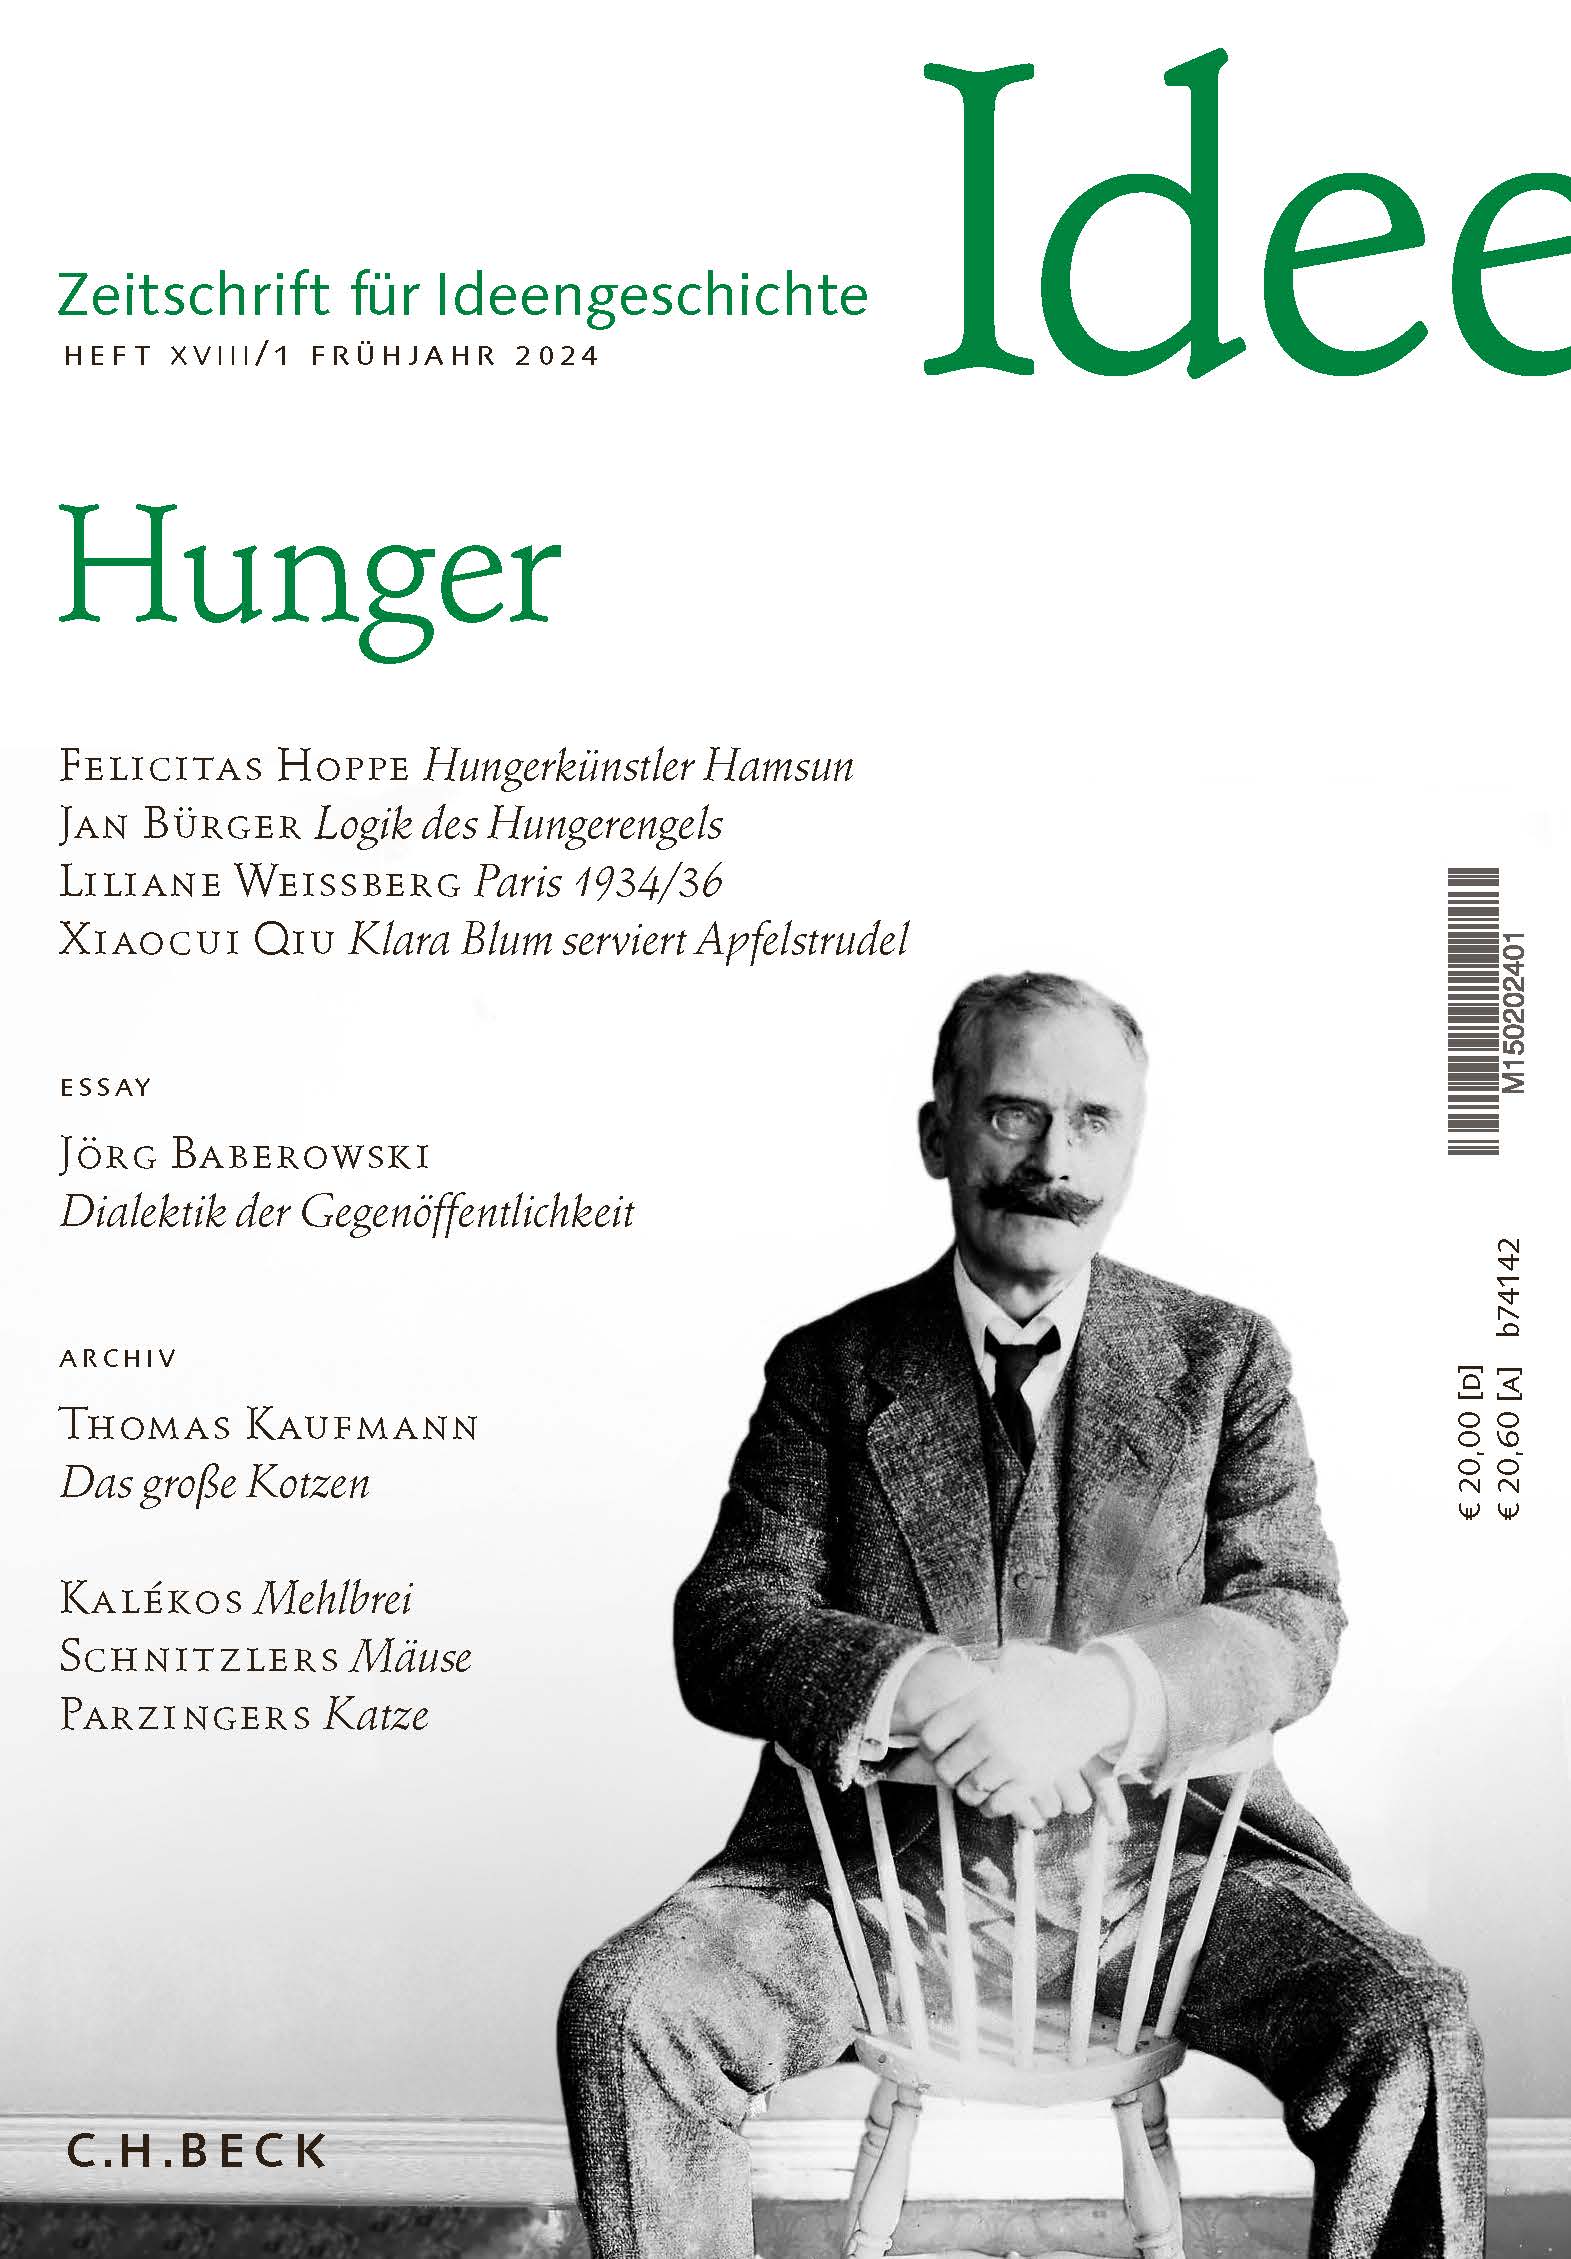 Cover von Heft XVIII/1 Frühjahr 2024